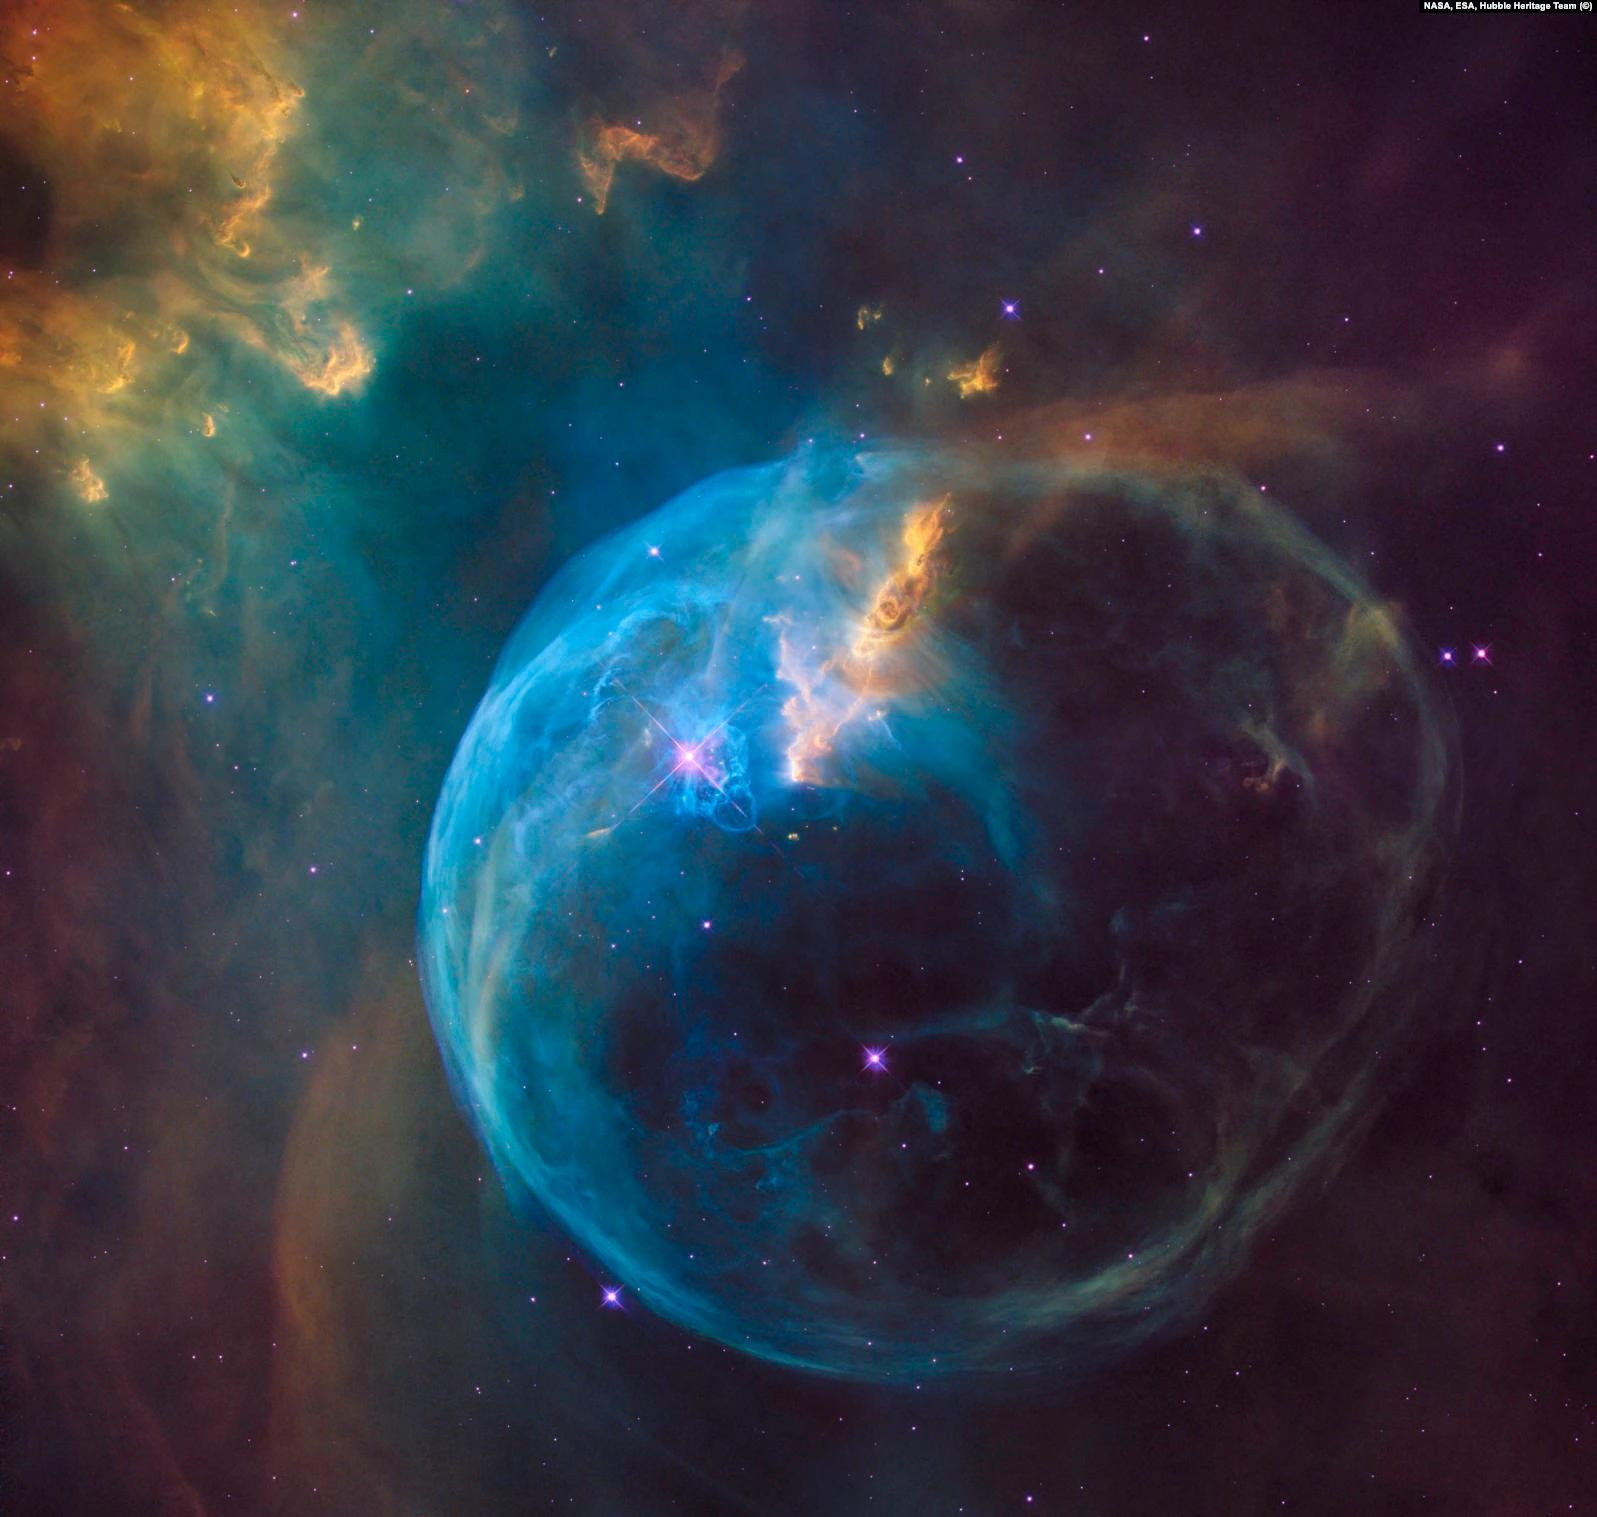 Одно из названий этой эмиссионной туманности в созвездии Кассиопеи – «Пузырь». Находящийся в восьми тысячах световых лет от нас, «Пузырь» образовался в результате движения звездного ветра, испускаемого расположенной неподалеку сверхгорячей звездой